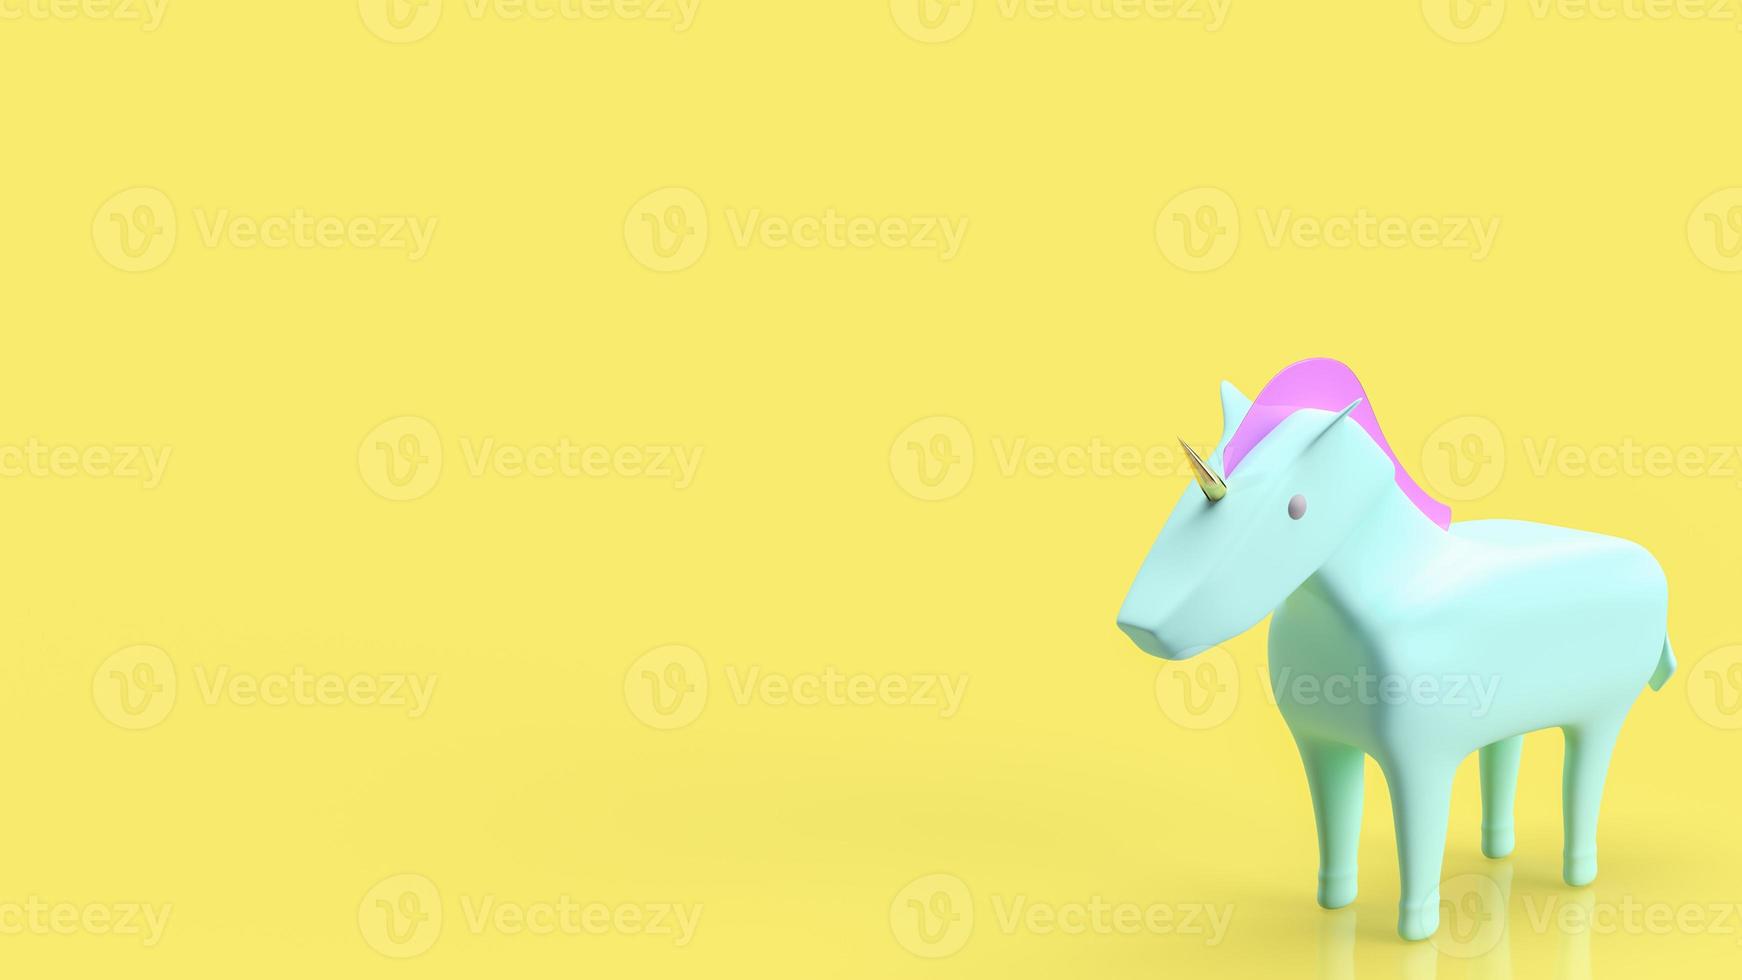 l'unicorno blu su sfondo giallo per il rendering 3d del concetto di avvio foto